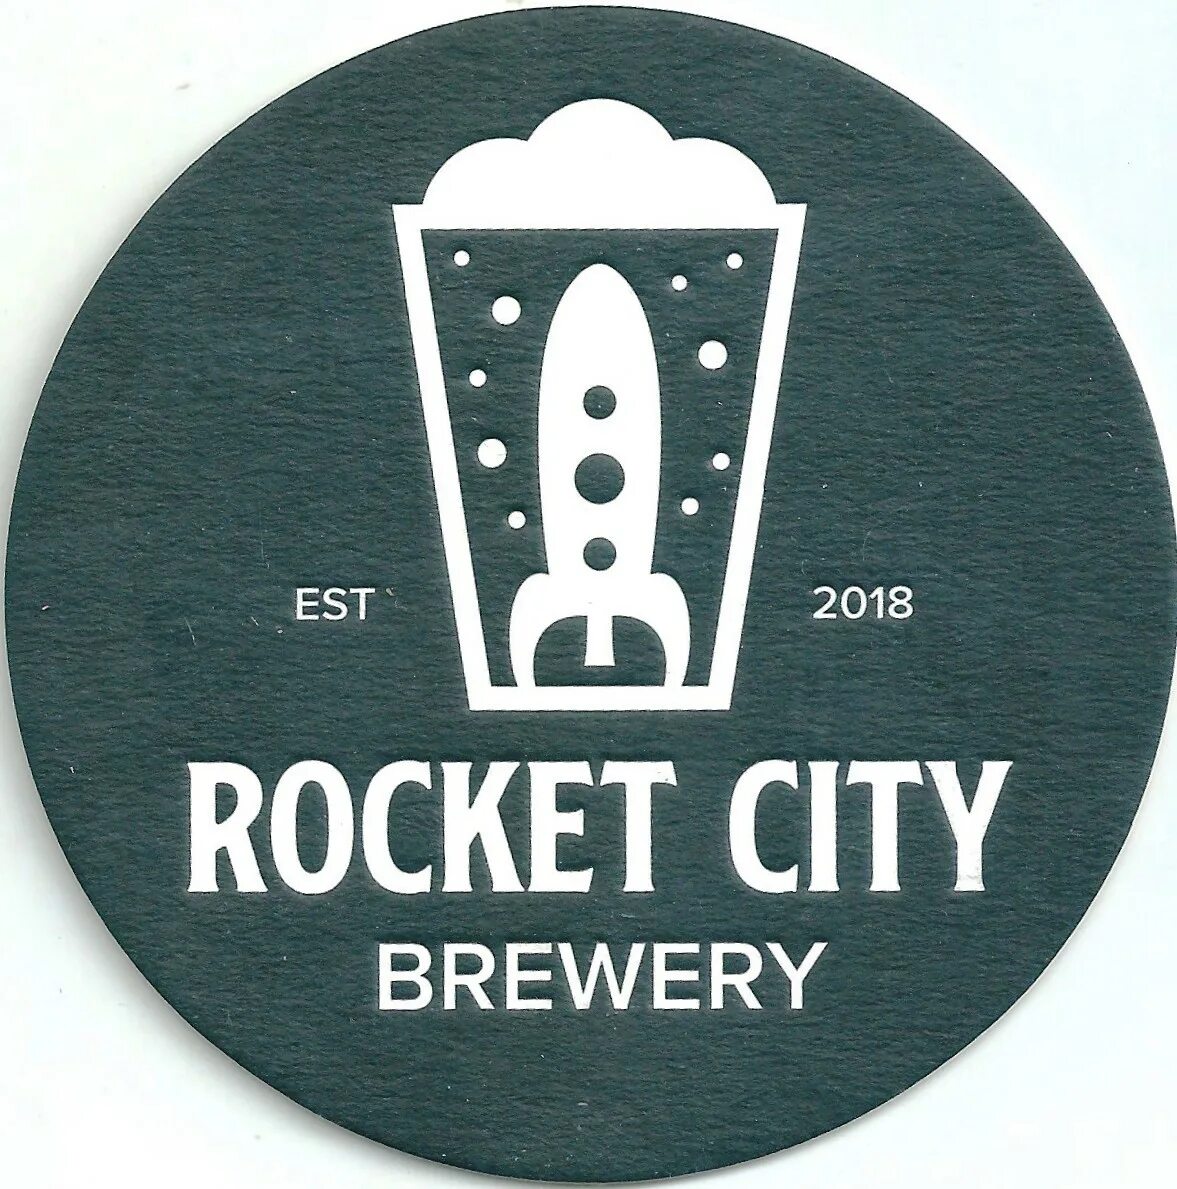 Rocket City Королев пивоварня. Пиво Rocket Brewery. Крафтовые пивоварни логотип. Рокет Сити пивоварня логотипы.